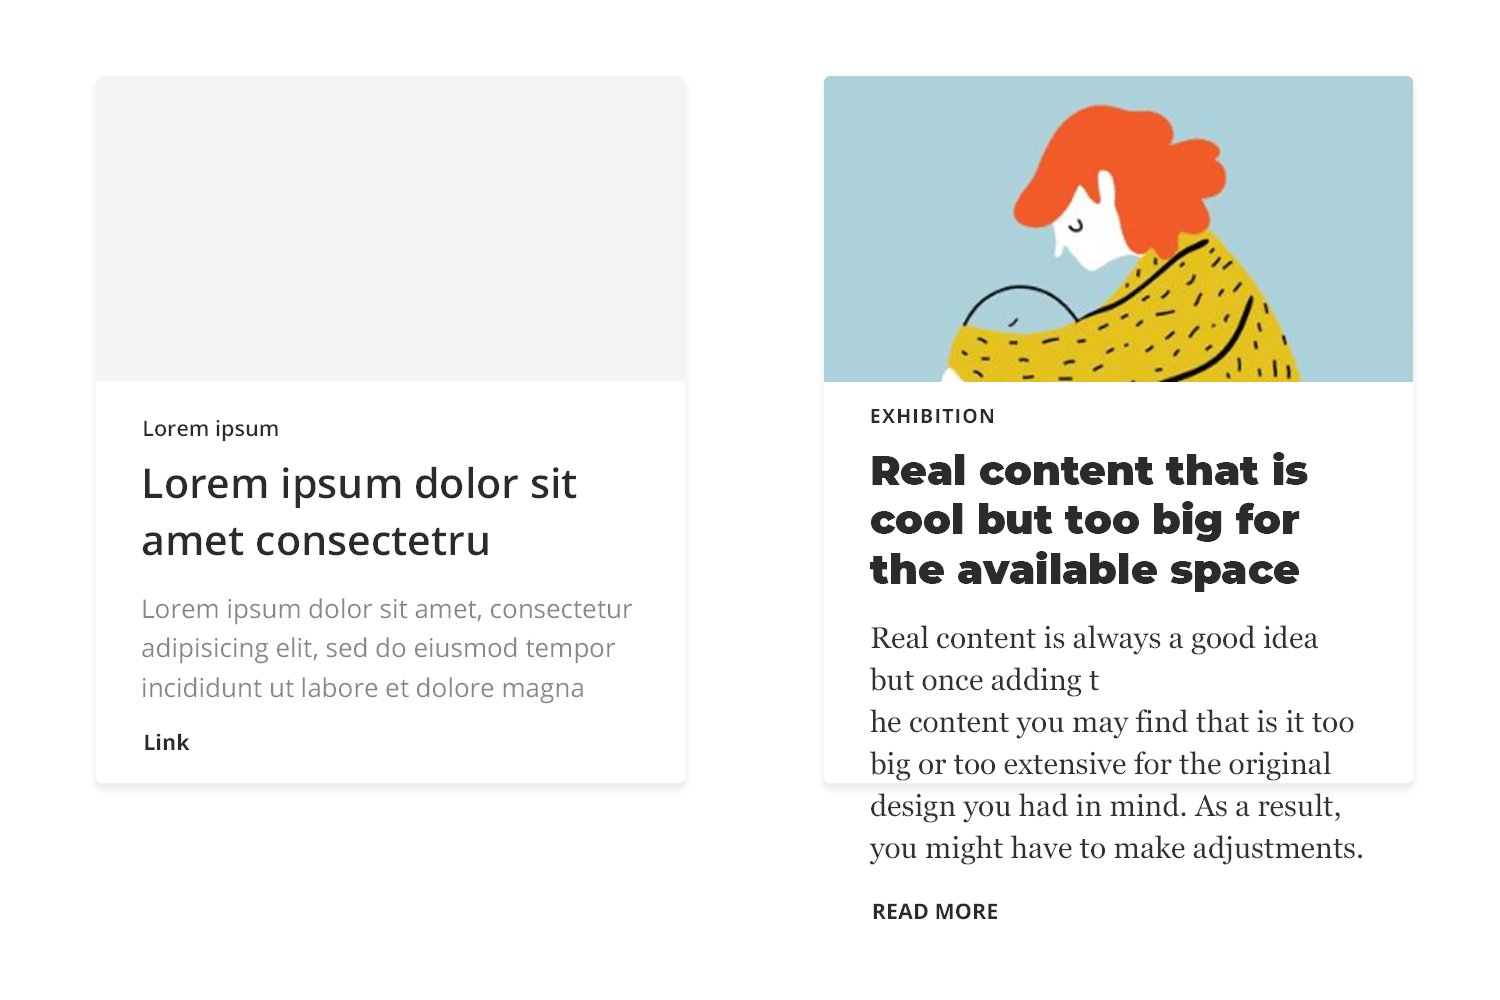 Lorem ipsum vs real content